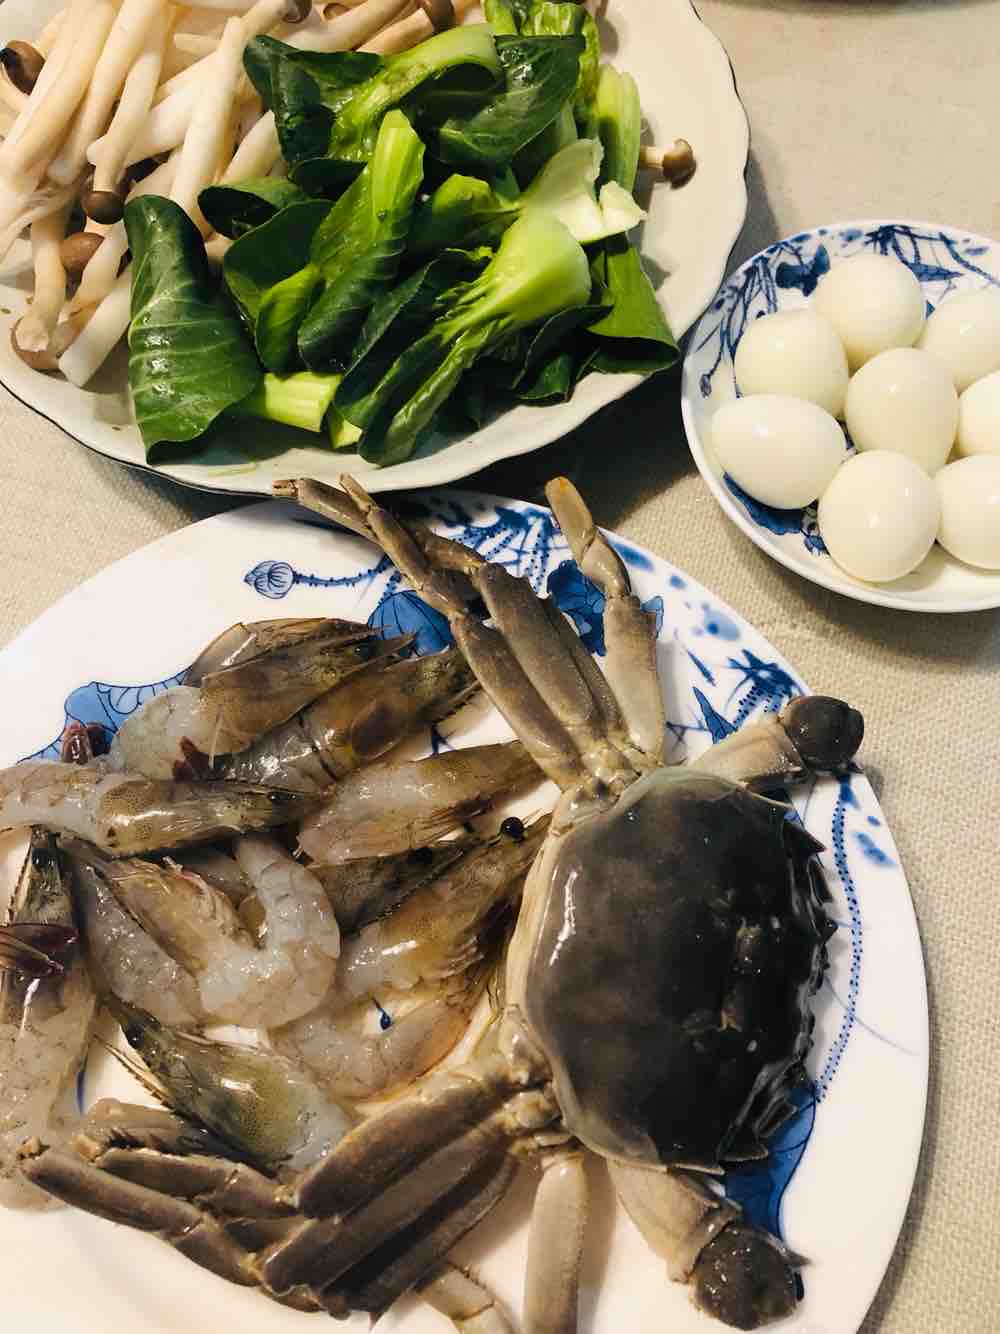 Fish Head Shrimp and Crab Soup recipe